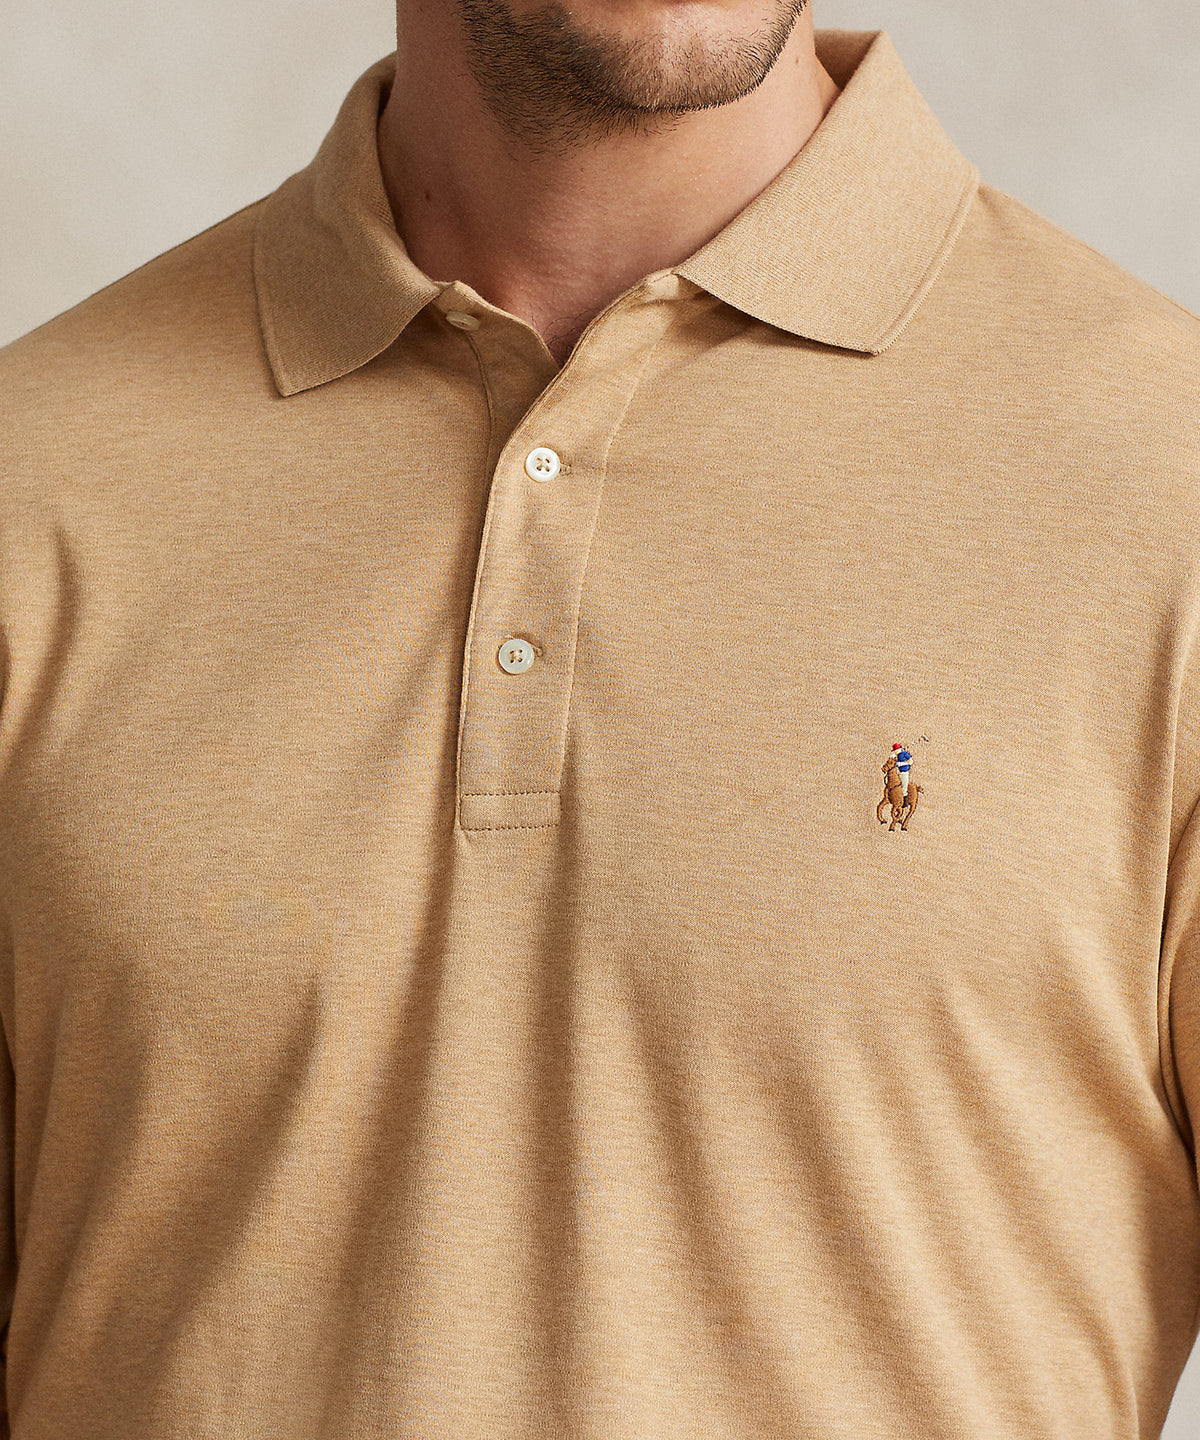 Polo Ralph Lauren Long Sleeve Soft Touch Polo Shirt, Men's Big & Tall